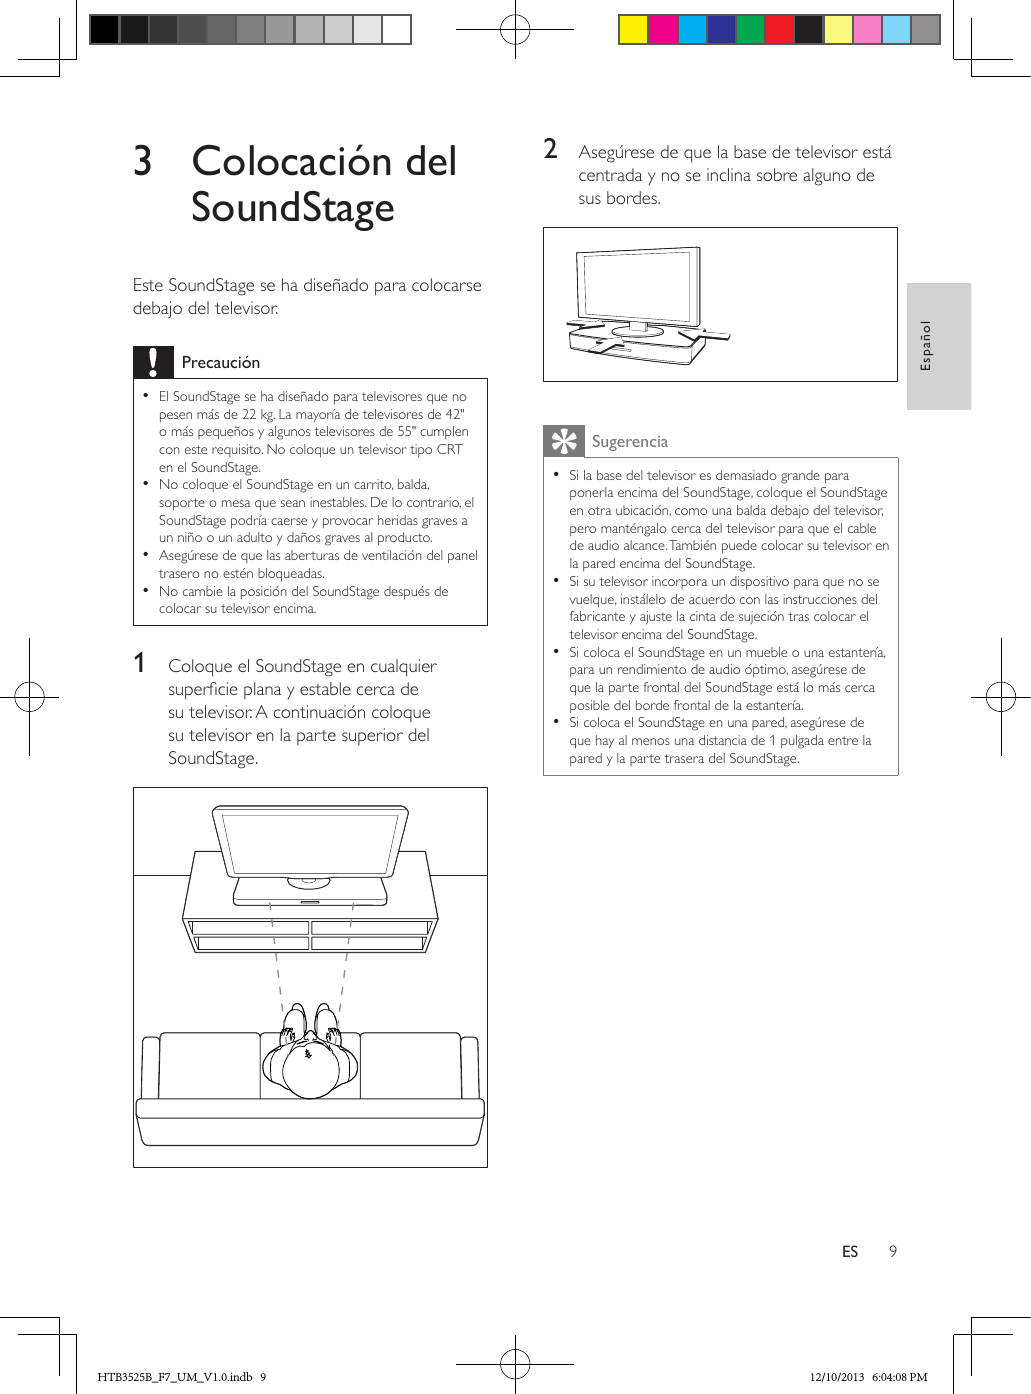 9EspañolES3  Colocación del SoundStageEste SoundStage se ha diseñado para colocarse debajo del televisor.Precaución • El SoundStage se ha diseñado para televisores que no pesen más de 22 kg. La mayoría de televisores de 42&quot; o más pequeños y algunos televisores de 55&quot; cumplen con este requisito. No coloque un televisor tipo CRT en el SoundStage. • No coloque el SoundStage en un carrito, balda, soporte o mesa que sean inestables. De lo contrario, el SoundStage podría caerse y provocar heridas graves a un niño o un adulto y daños graves al producto. • Asegúrese de que las aberturas de ventilación del panel trasero no estén bloqueadas. • No cambie la posición del SoundStage después de colocar su televisor encima.1  Coloque el SoundStage en cualquier supercie plana y estable cerca de su televisor. A continuación coloque su televisor en la parte superior del SoundStage. 2  Asegúrese de que la base de televisor está centrada y no se inclina sobre alguno de sus bordes.  Sugerencia • Si la base del televisor es demasiado grande para ponerla encima del SoundStage, coloque el SoundStage en otra ubicación, como una balda debajo del televisor, pero manténgalo cerca del televisor para que el cable de audio alcance. También puede colocar su televisor en la pared encima del SoundStage. • Si su televisor incorpora un dispositivo para que no se vuelque, instálelo de acuerdo con las instrucciones del fabricante y ajuste la cinta de sujeción tras colocar el televisor encima del SoundStage. • Si coloca el SoundStage en un mueble o una estantería, para un rendimiento de audio óptimo, asegúrese de que la parte frontal del SoundStage está lo más cerca posible del borde frontal de la estantería. • Si coloca el SoundStage en una pared, asegúrese de que hay al menos una distancia de 1 pulgada entre la pared y la parte trasera del SoundStage.HTB3525B_F7_UM_V1.0.indb   9 12/10/2013   6:04:08 PM